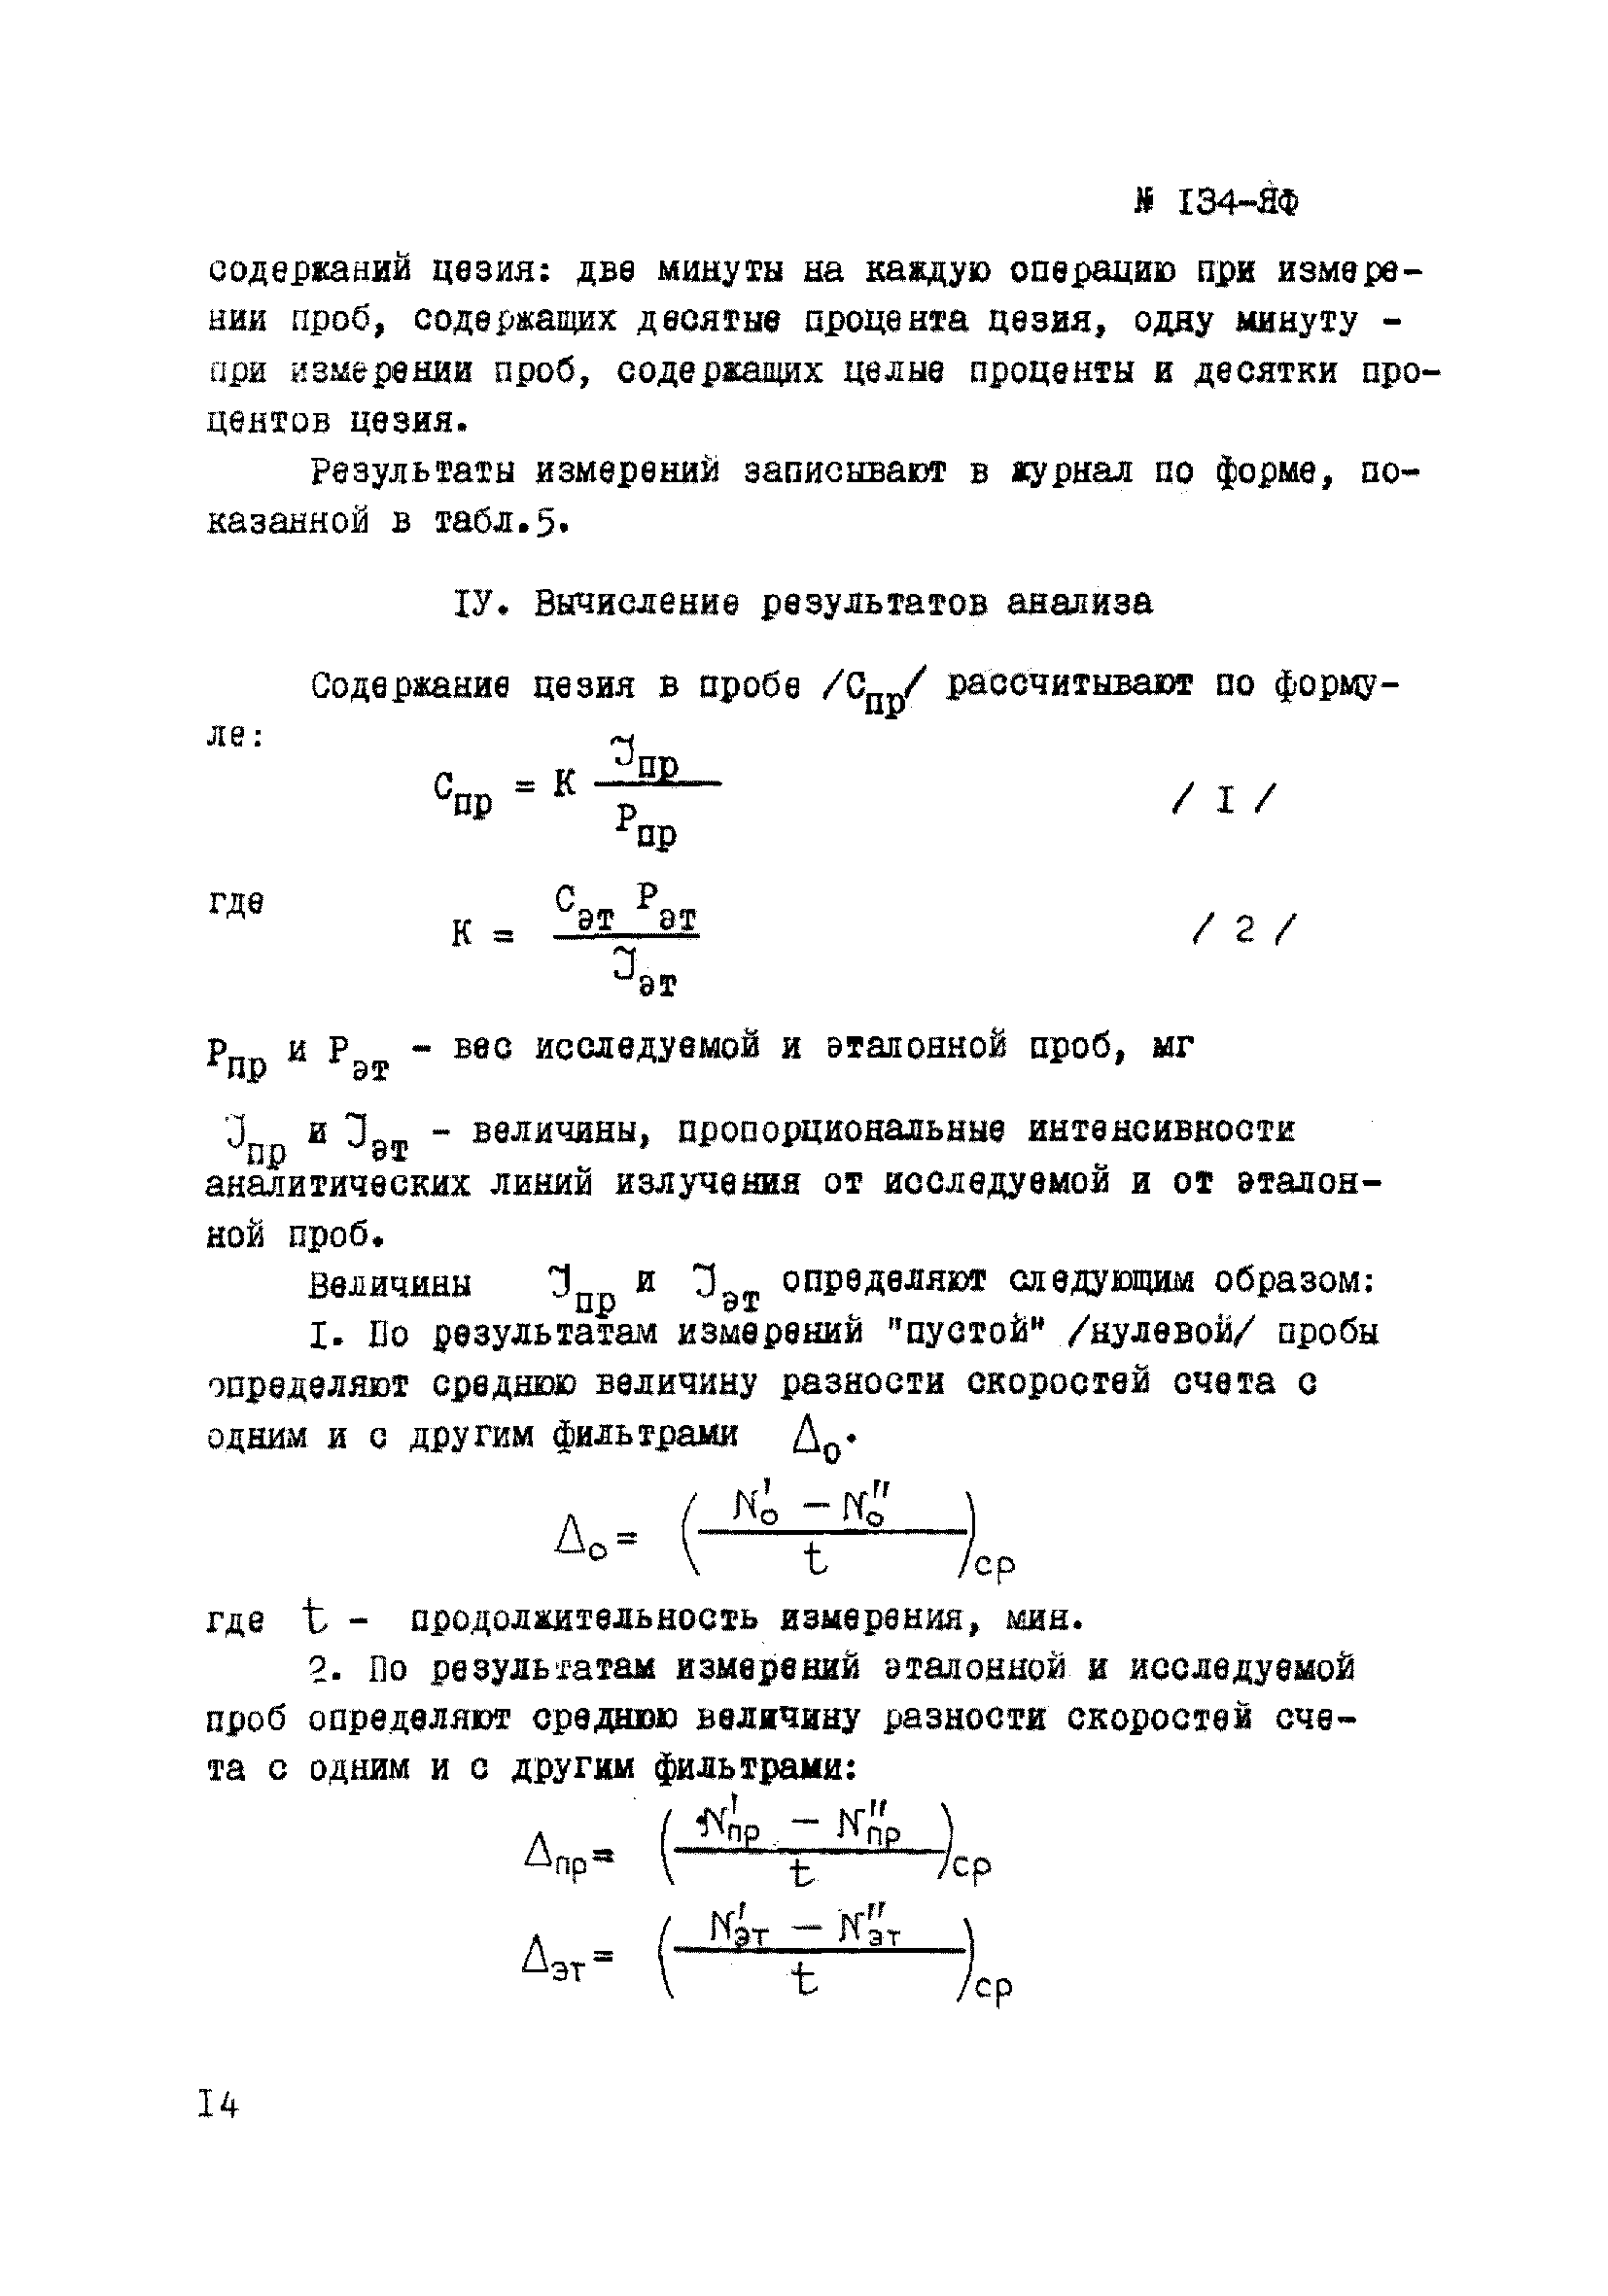 Инструкция НСАМ 134-ЯФ